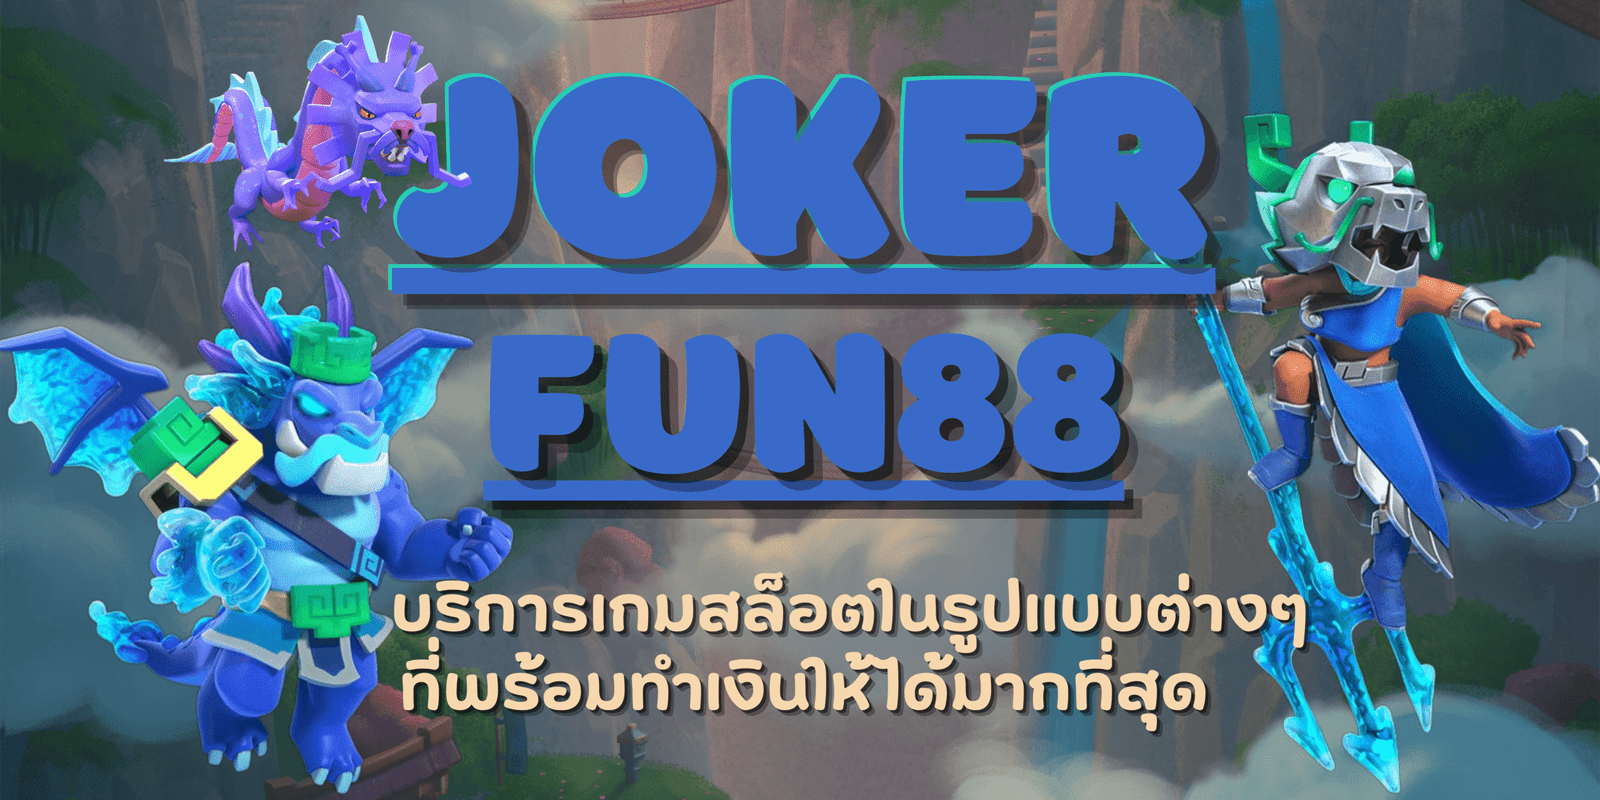 joker-fun88-สมัครสมาชิก